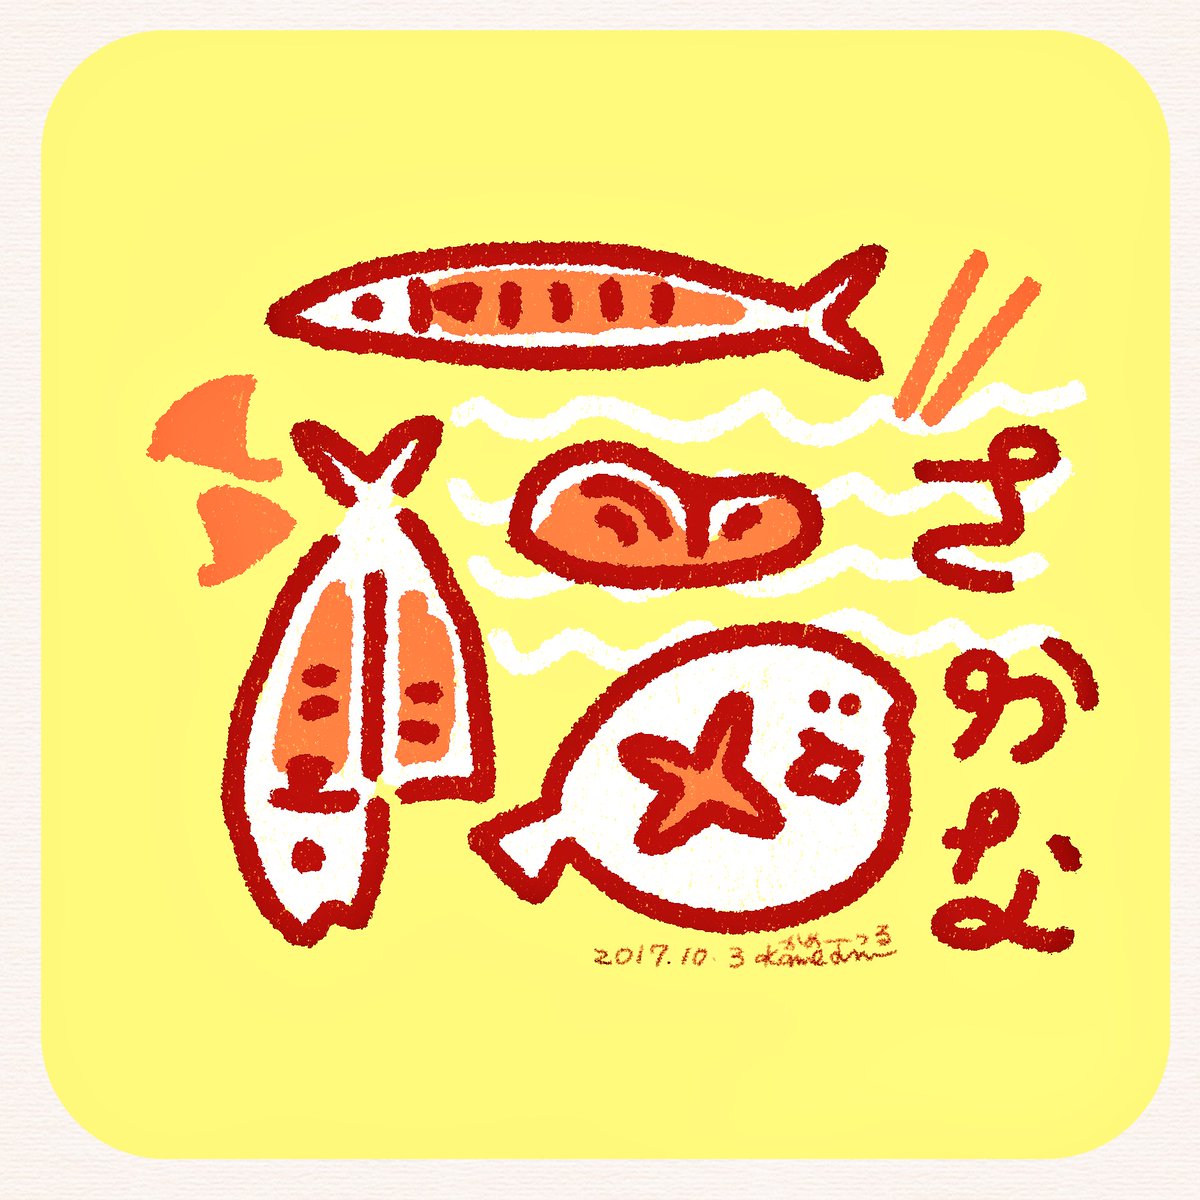 亀山鶴子 かめつる Pa Twitter 魚のお話が出てきたのでさかな 魚 イラスト かめつる Artwork 焼き魚 煮魚 干物 切り身